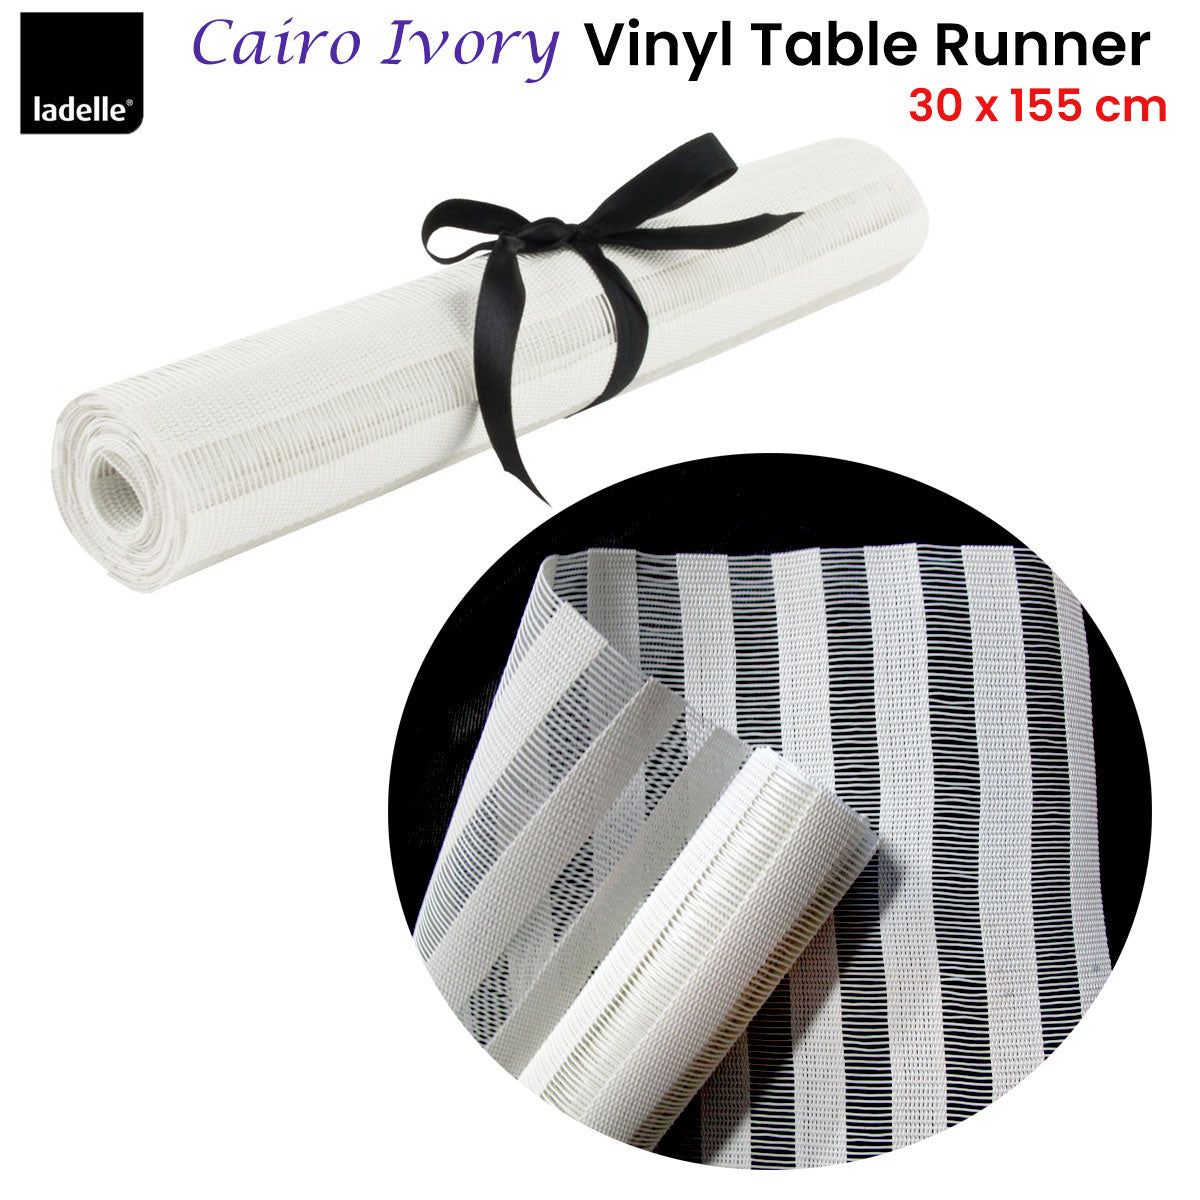 Ladelle Cairo Ivory Vinyl Table Runner 30 x 155 cm - Newstart Furniture